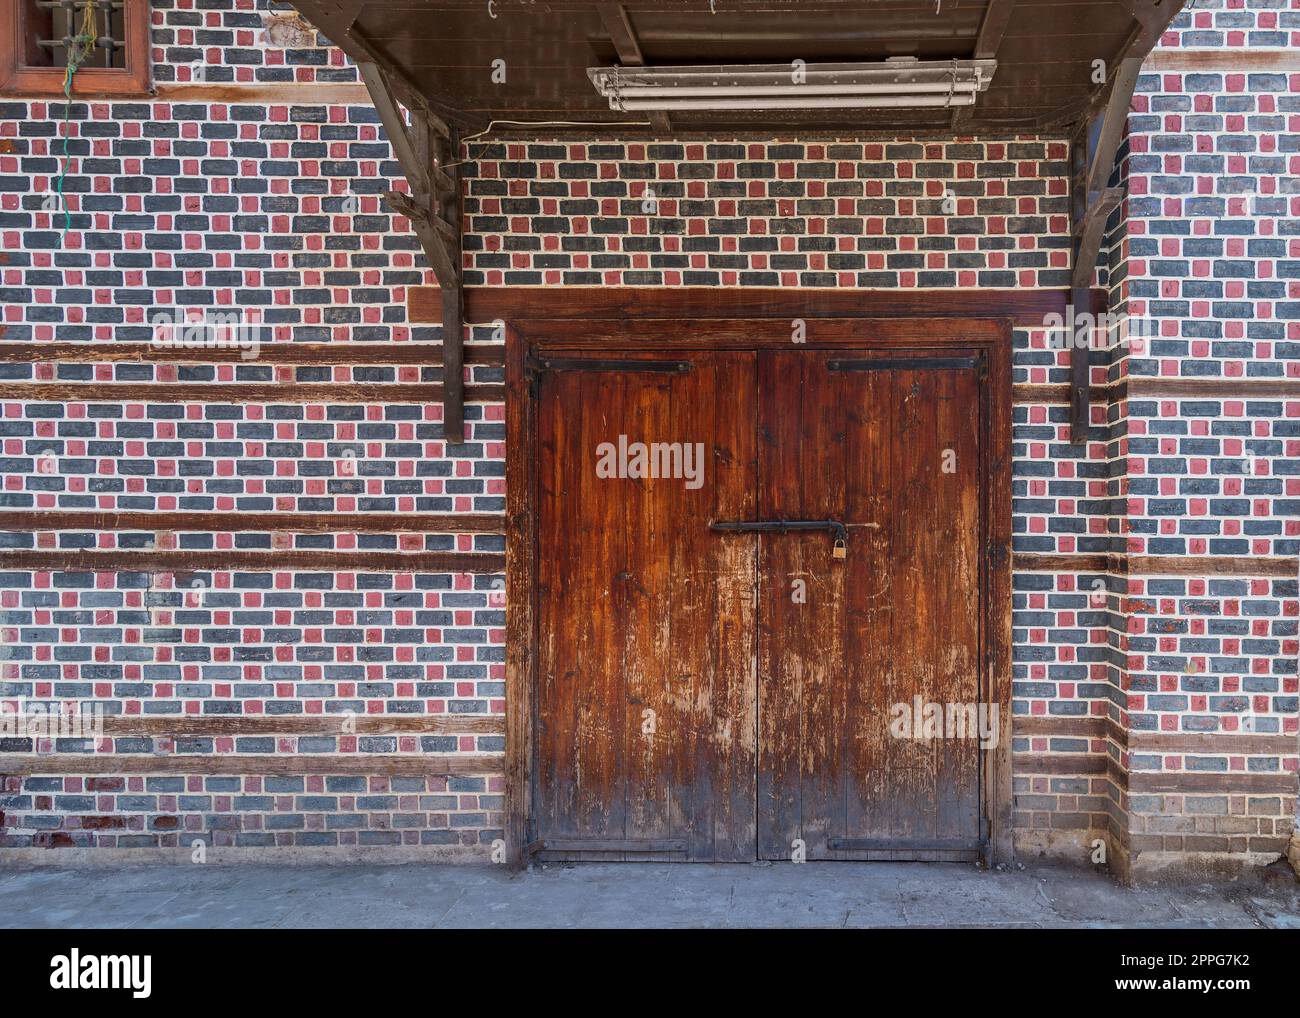 Grunge porta d'ingresso ad arco decorata in legno con baldacchino in legno sopra al muro con mattoni neri e rossi con cuciture bianche Foto Stock